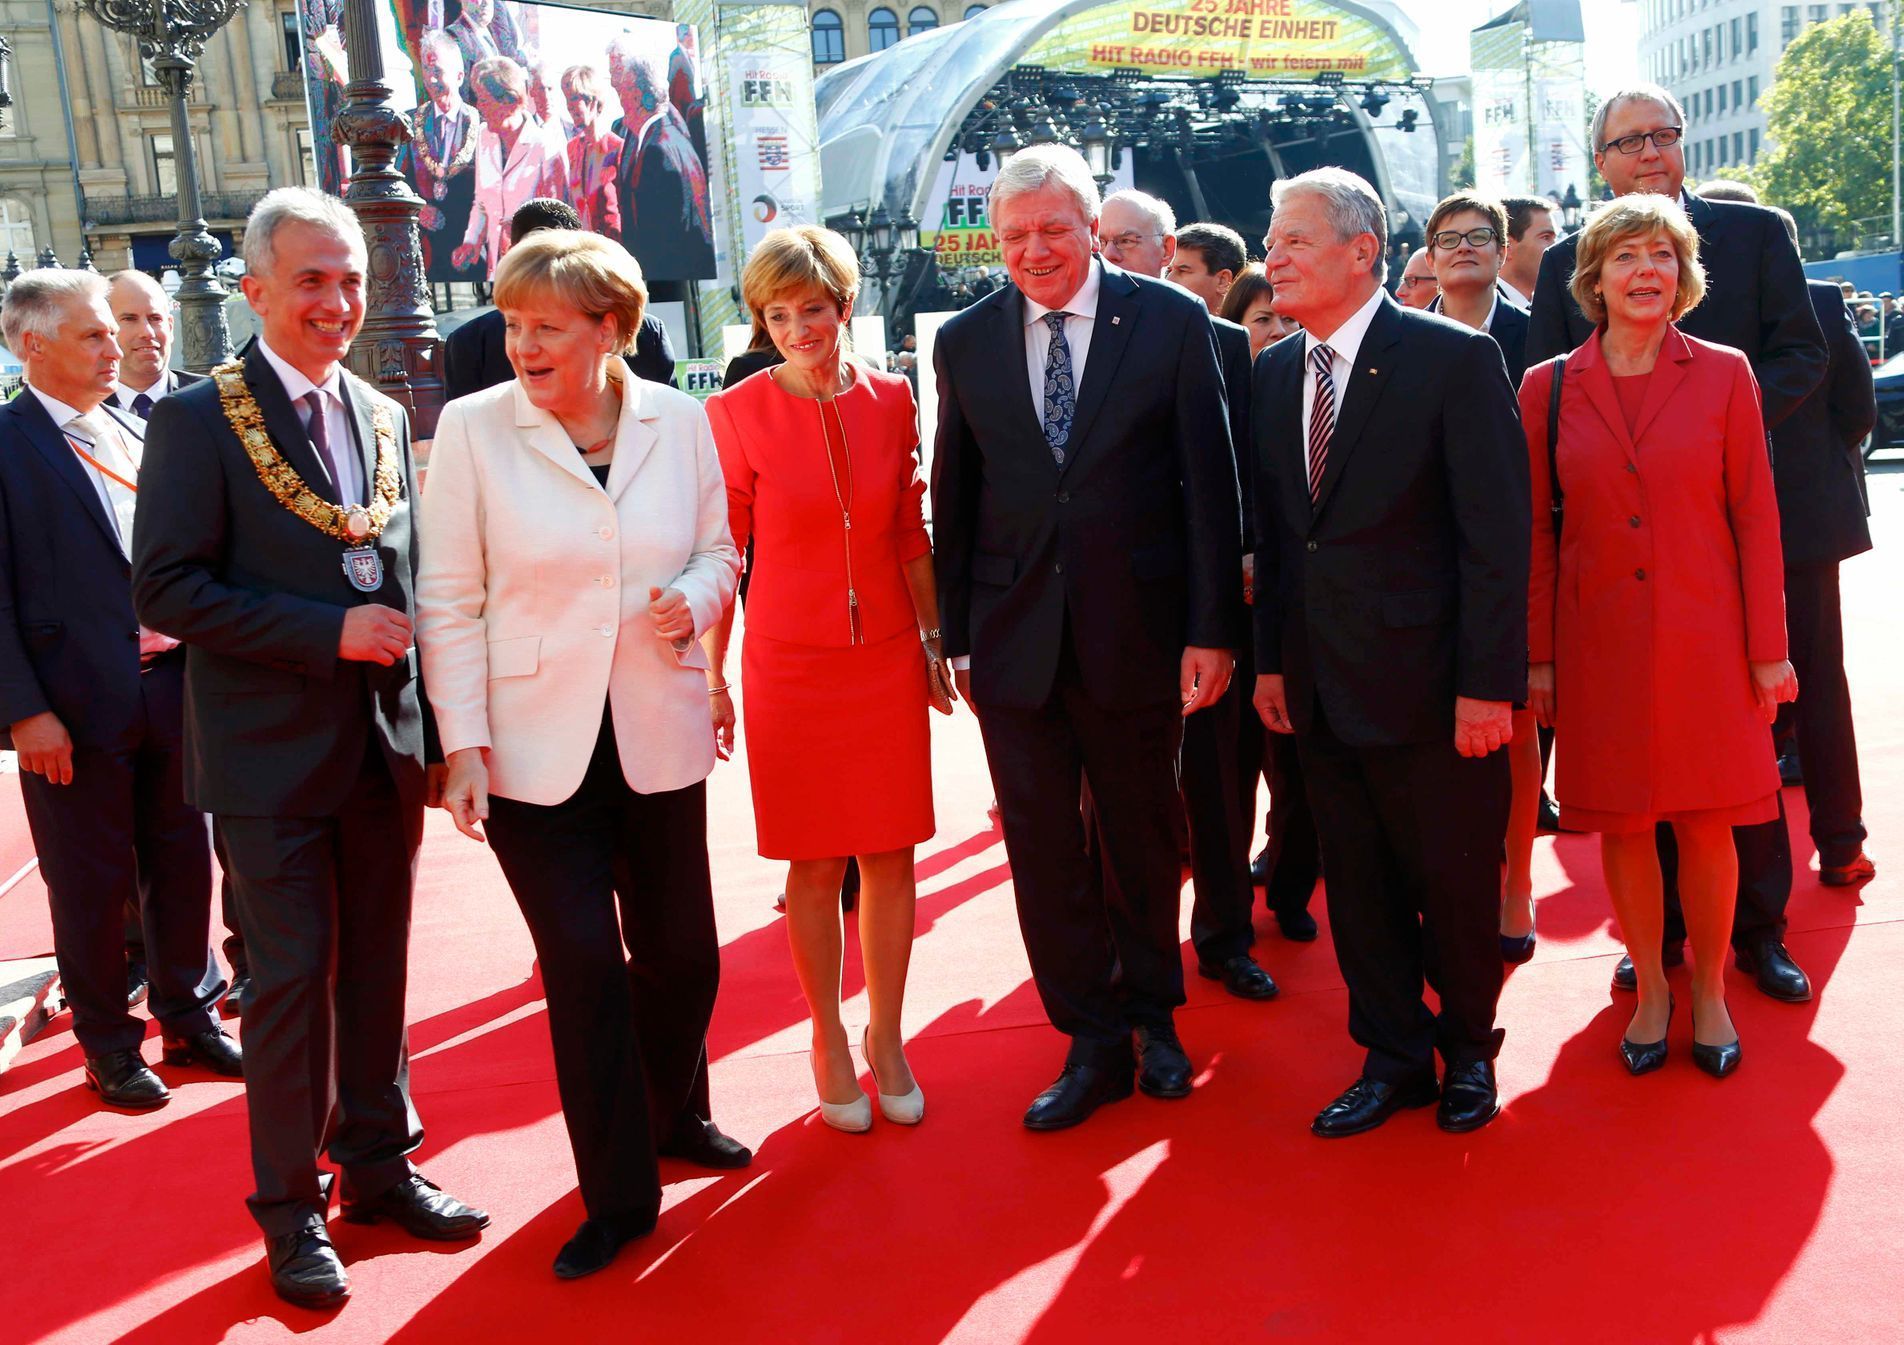 Němečtí politici přicházejí na oficiální oslavu sjednocení ve Frankfurtu